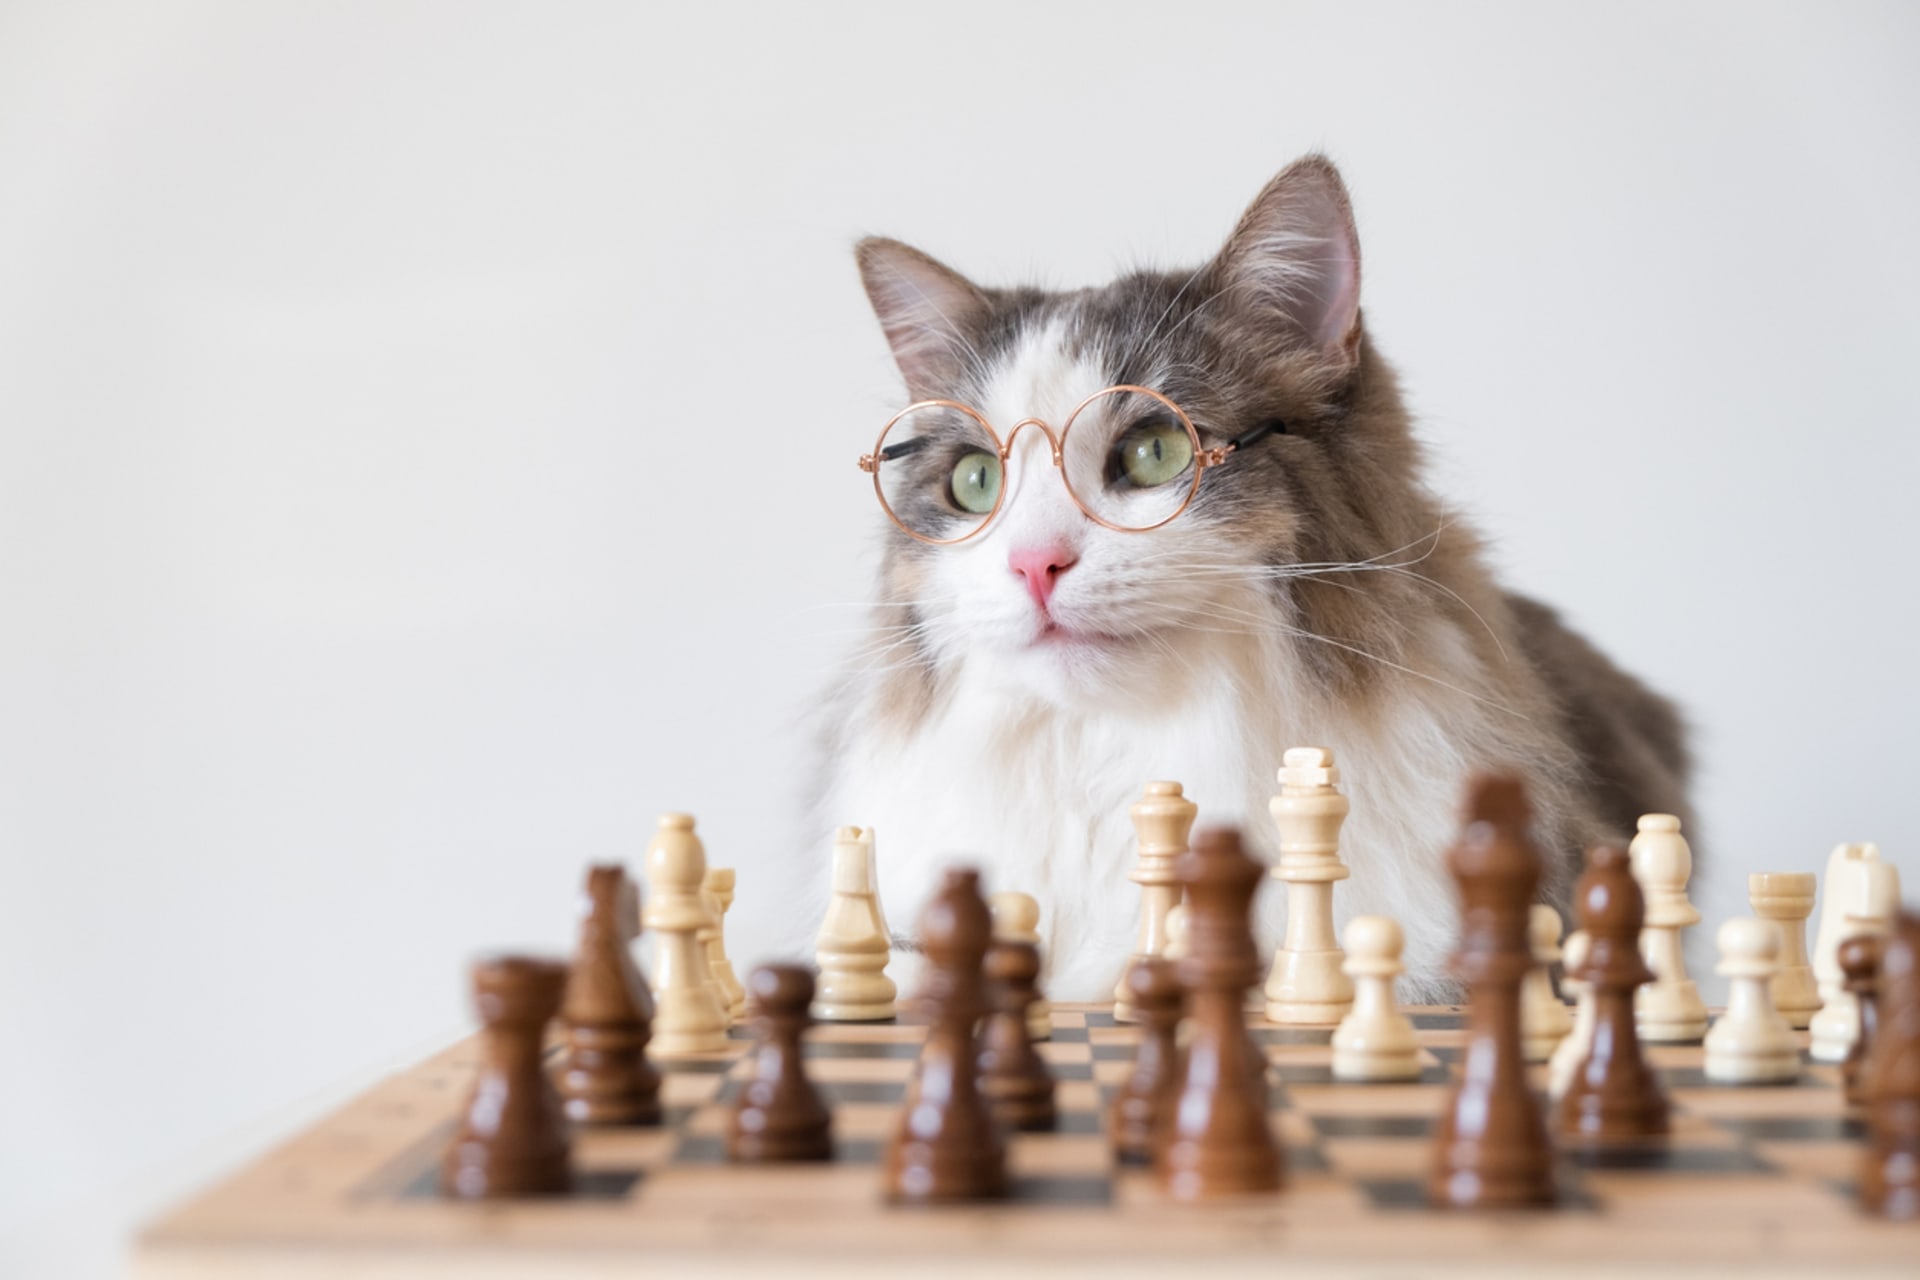 Šachista se z vaší kočky asi nestane, ale i pro ni můžete pořídit logickou hru